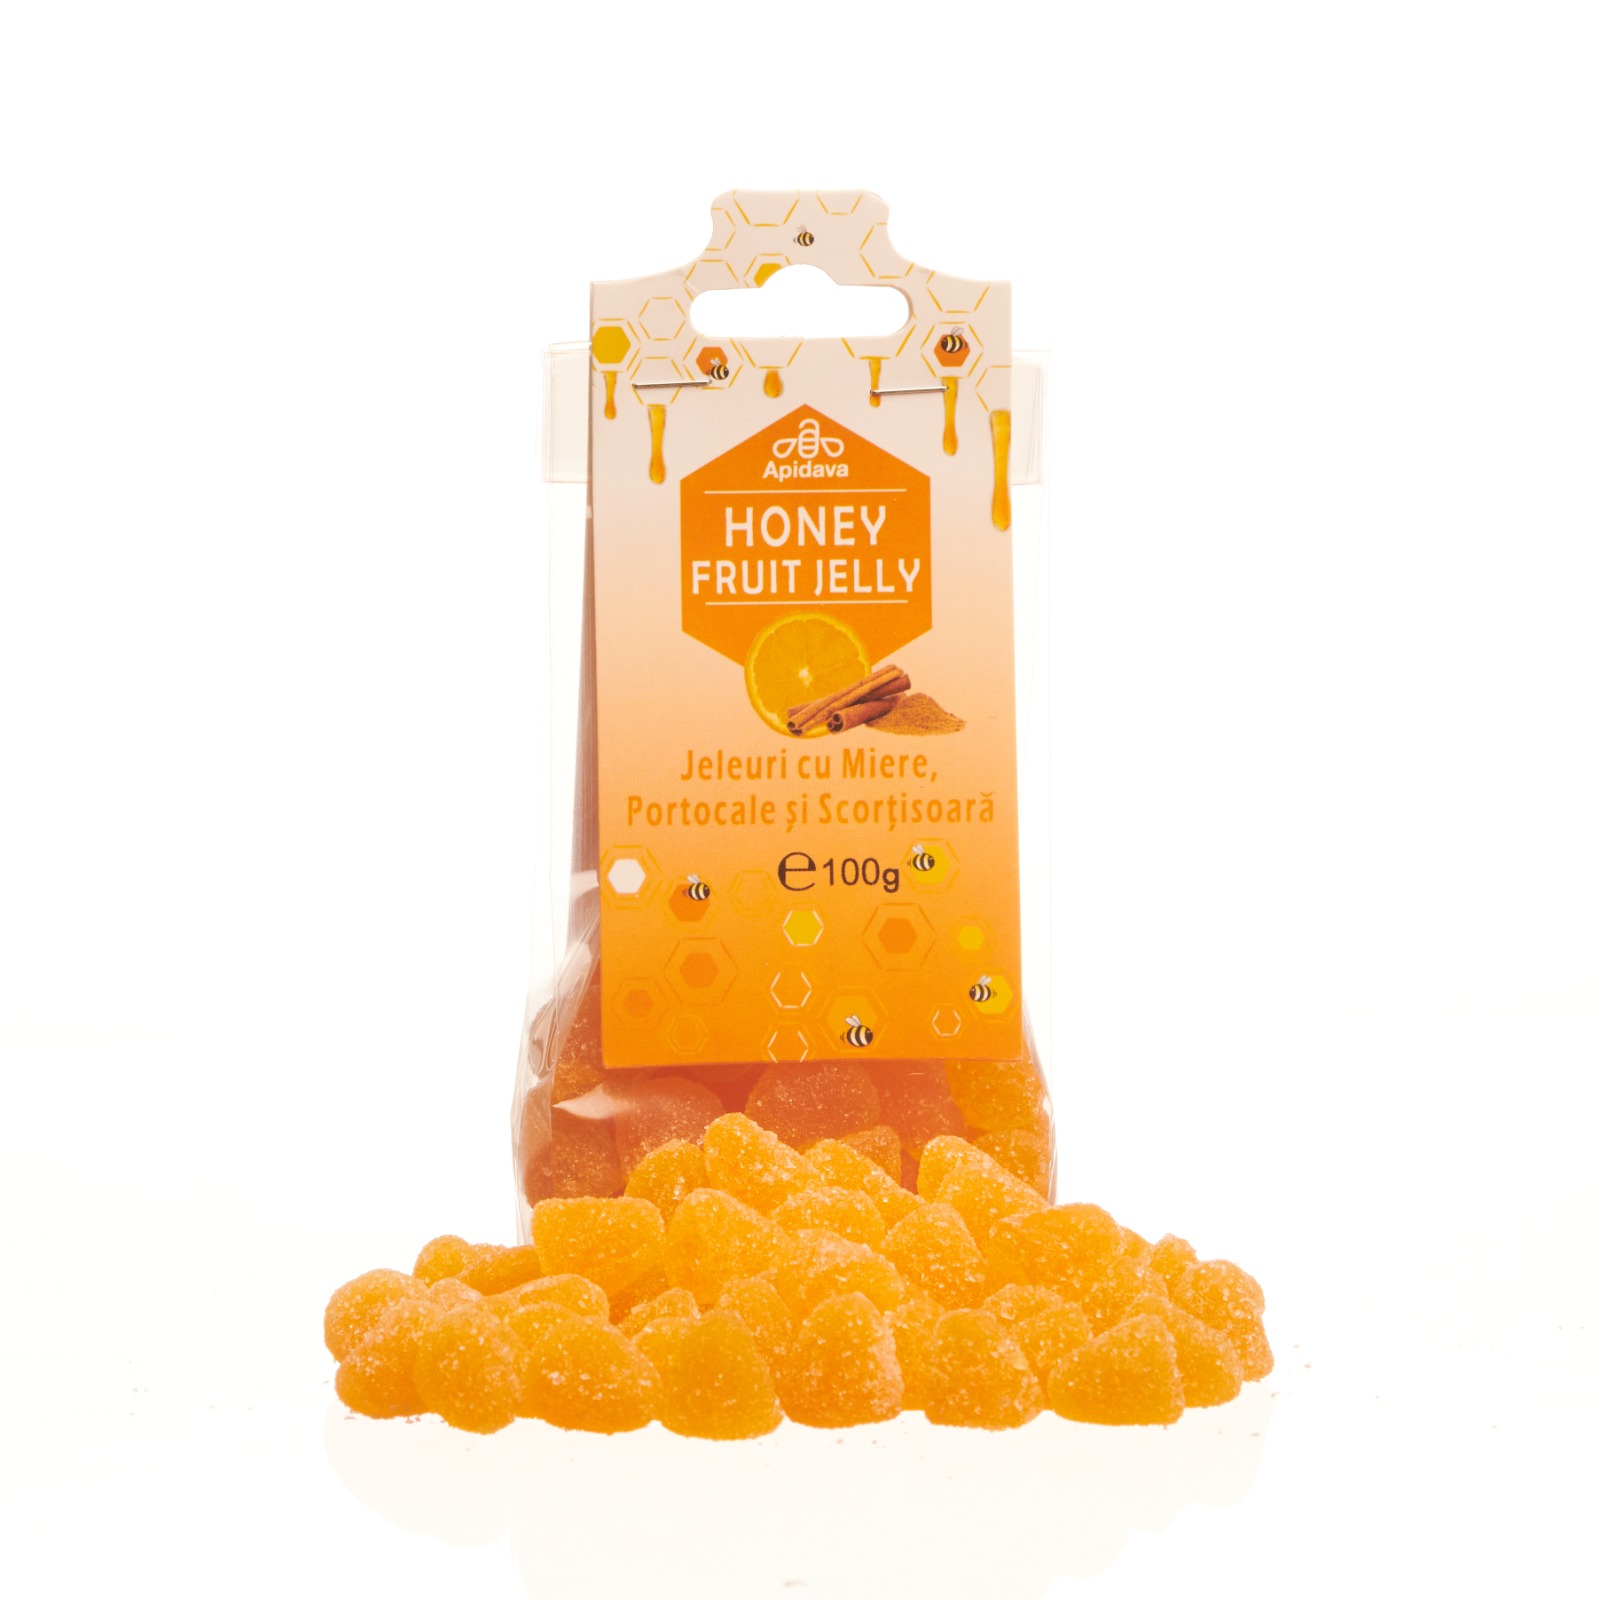 Jeleuri cu miere si aroma de portocale si scortisoara, 100 g, Apidava